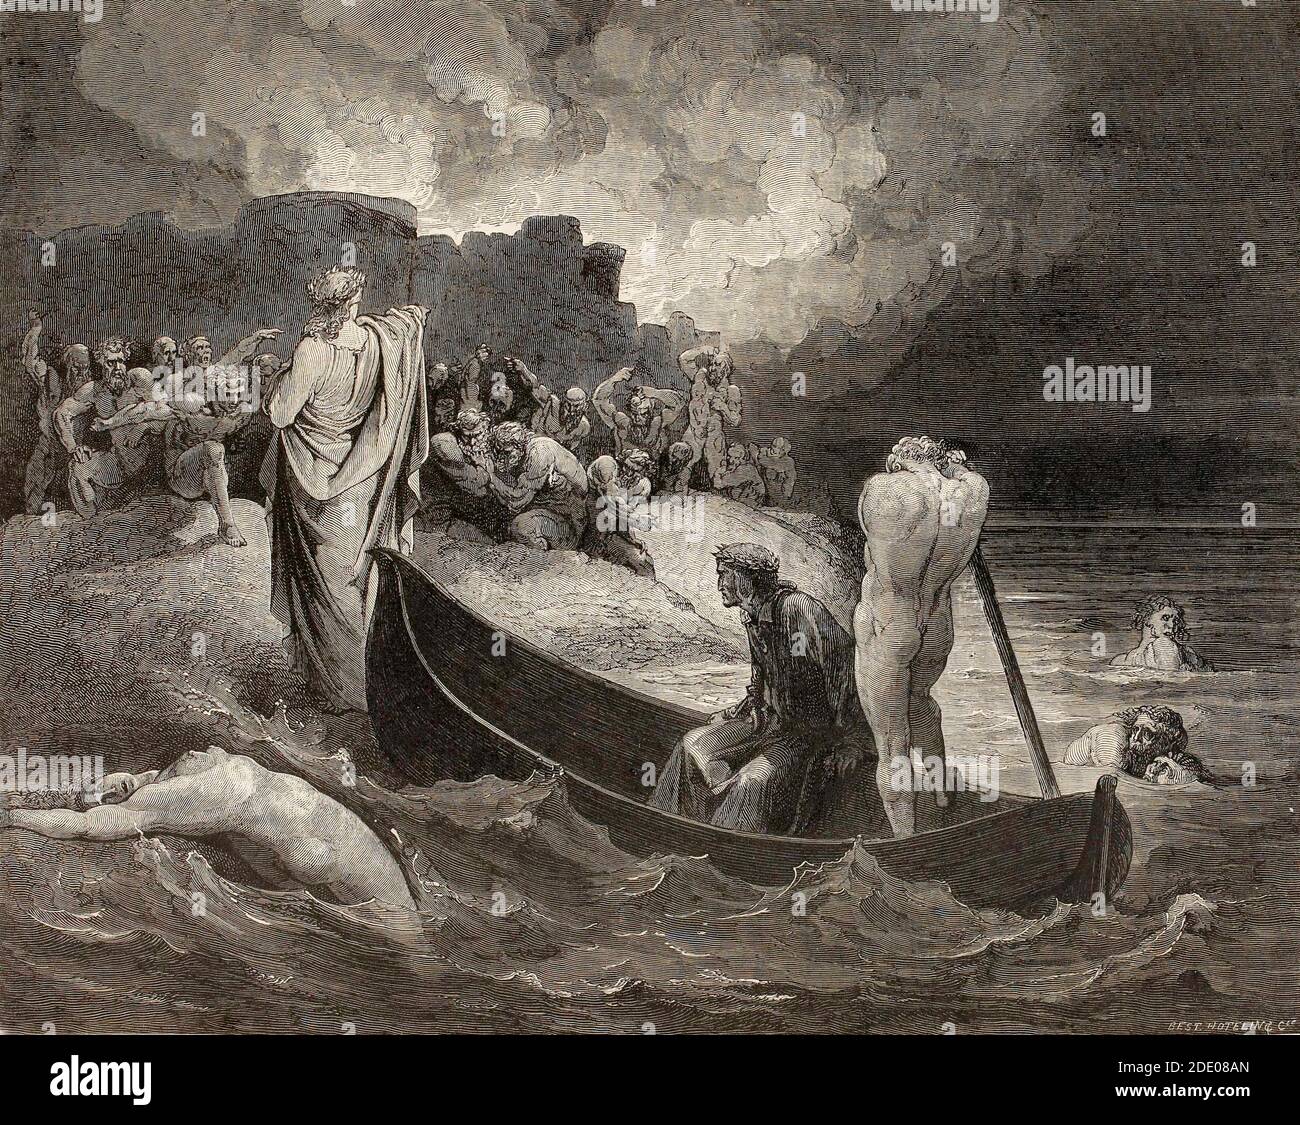 Dante Divina Commedia - Inferno - quinto cerchio - sbarco Di fronte alle mura della città di Dis - canto VIII - illustrazione di Gustave Dorè Foto Stock